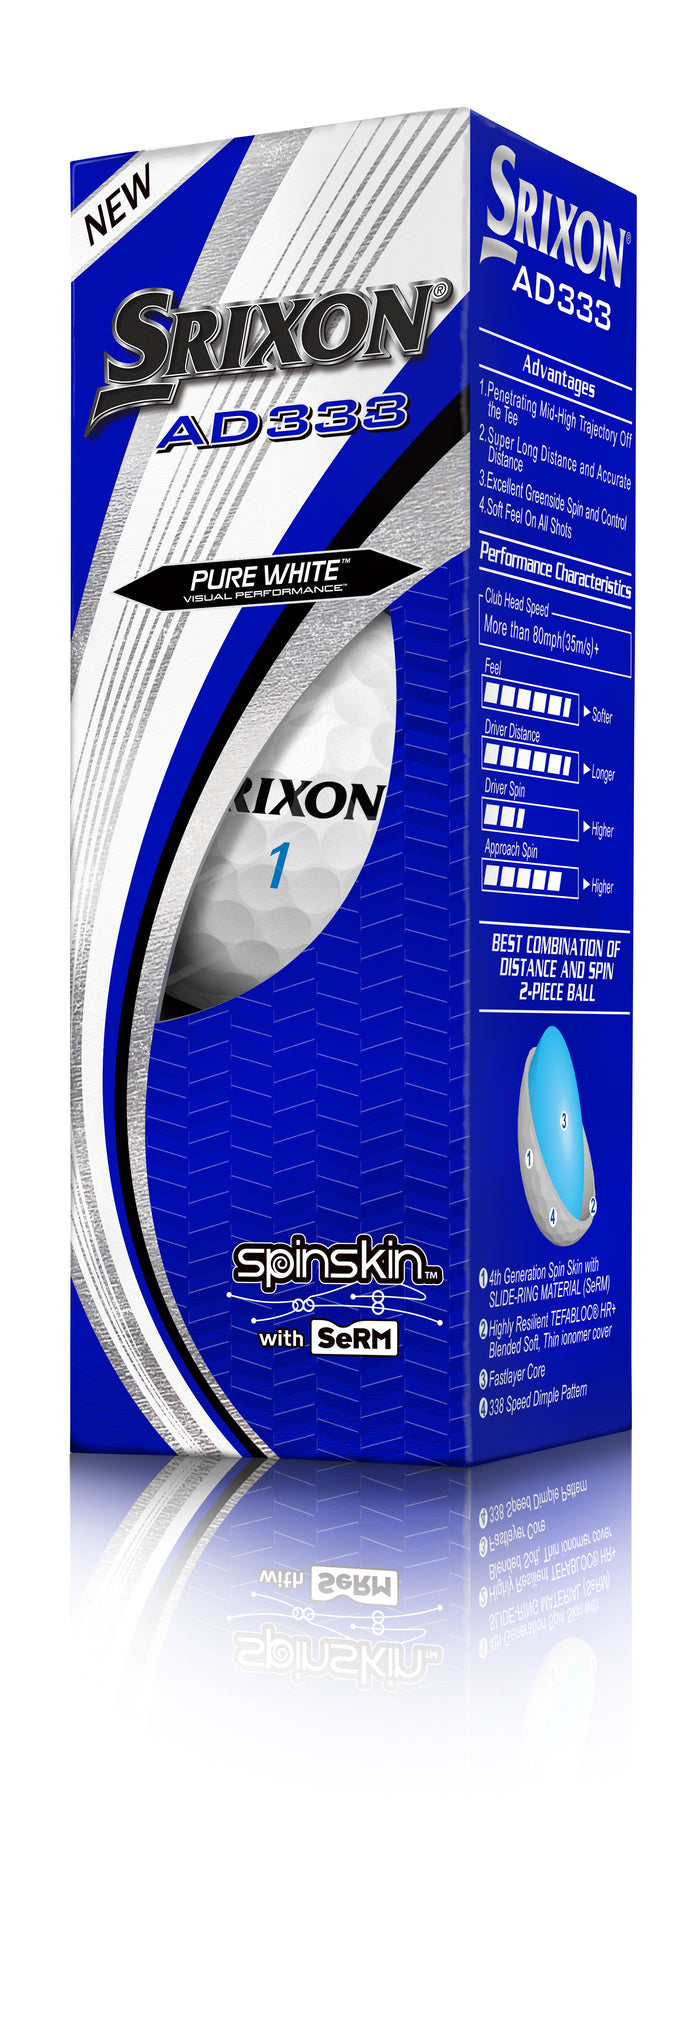 SRIXON AD333 SpinSkin 12 Golf Balls White